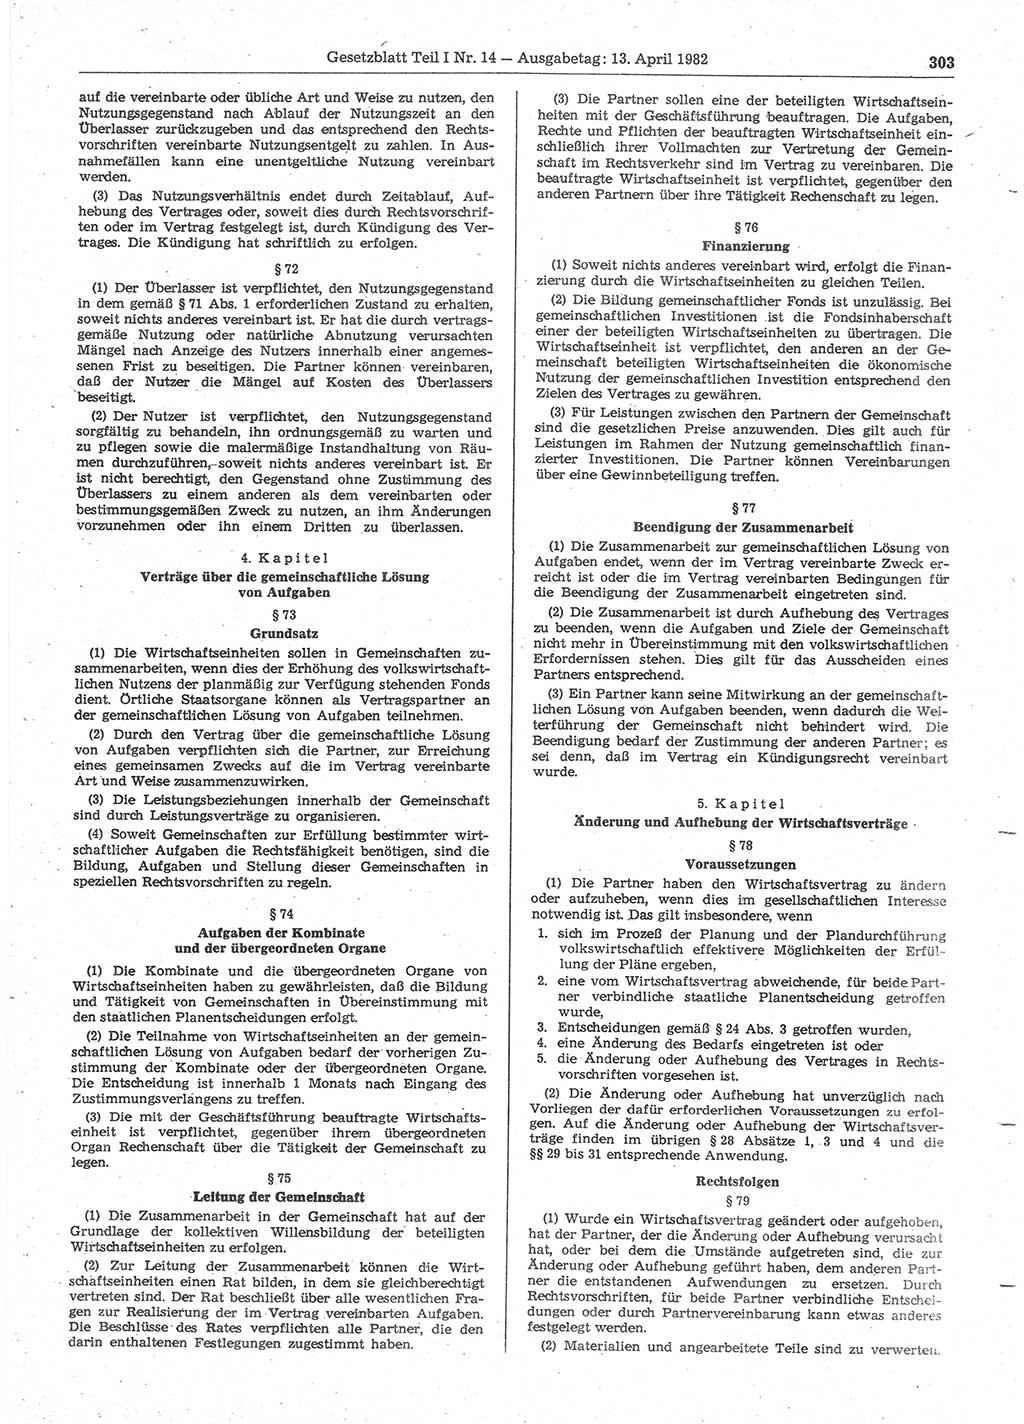 Gesetzblatt (GBl.) der Deutschen Demokratischen Republik (DDR) Teil Ⅰ 1982, Seite 303 (GBl. DDR Ⅰ 1982, S. 303)